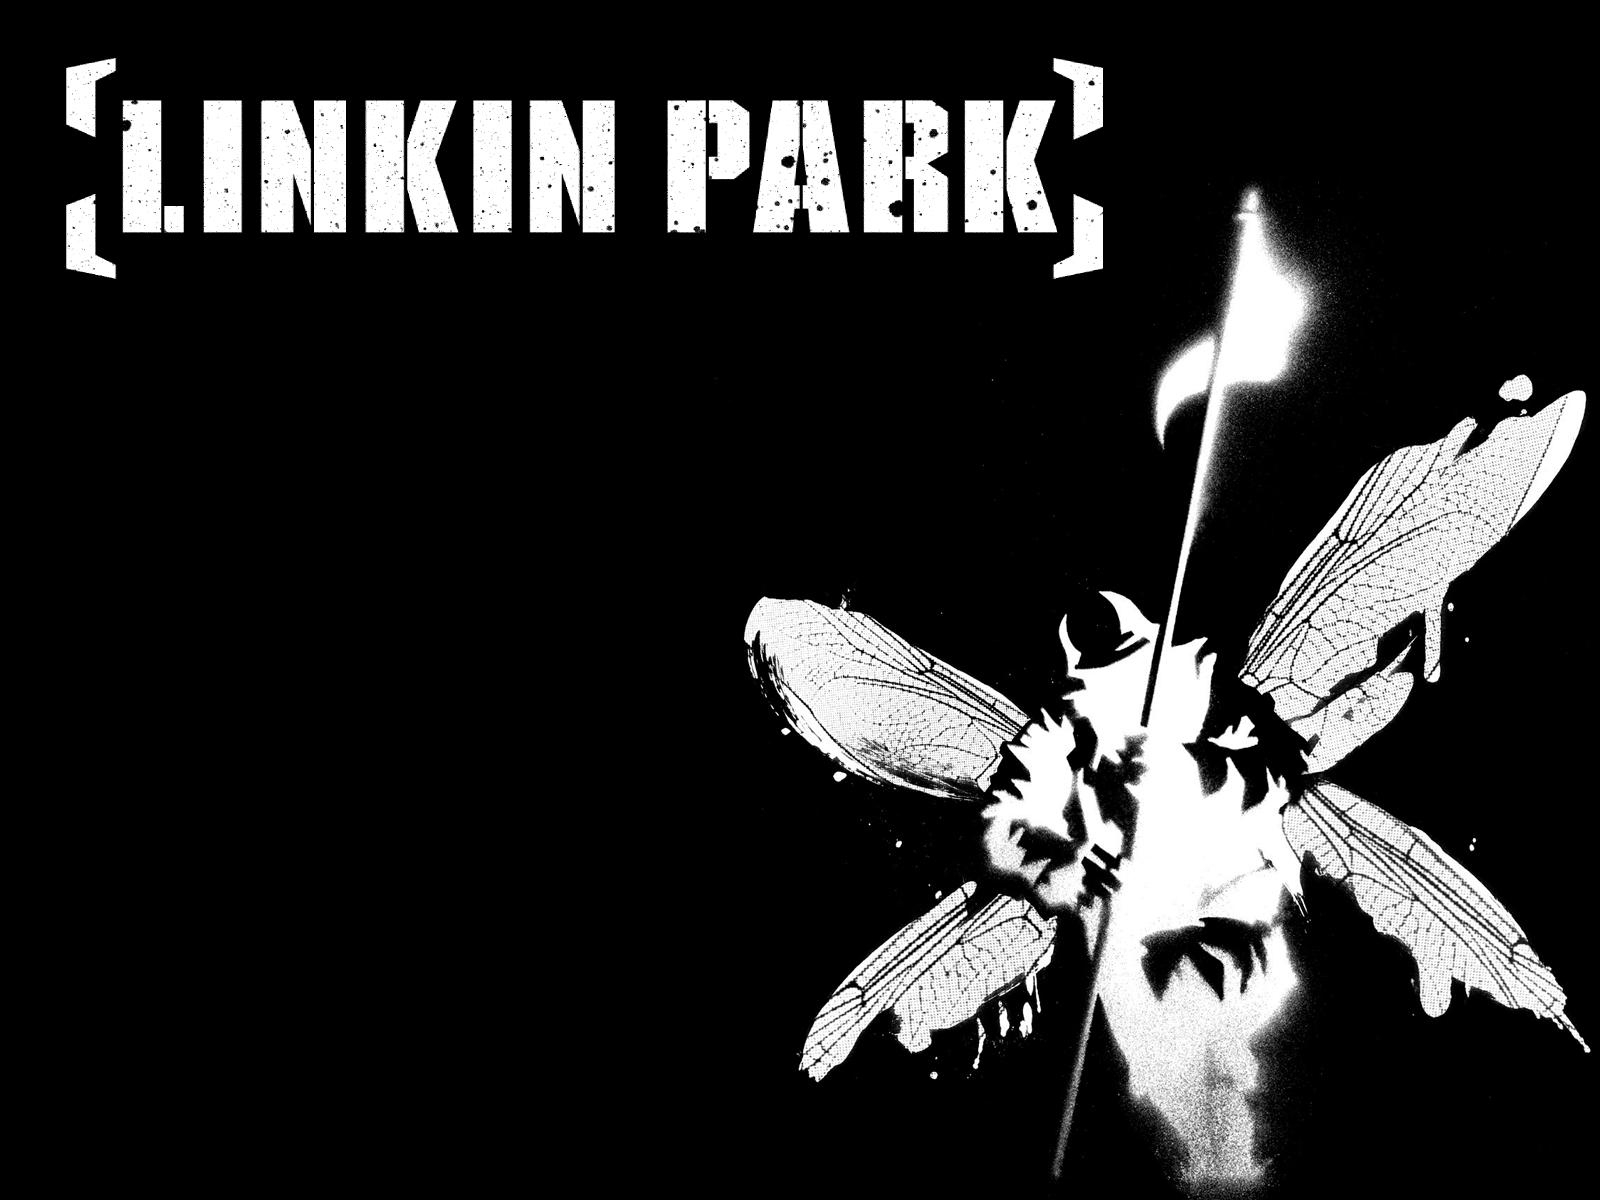 linkin park fondos de pantalla hd,en blanco y negro,fuente,fotografía monocroma,diseño gráfico,ala